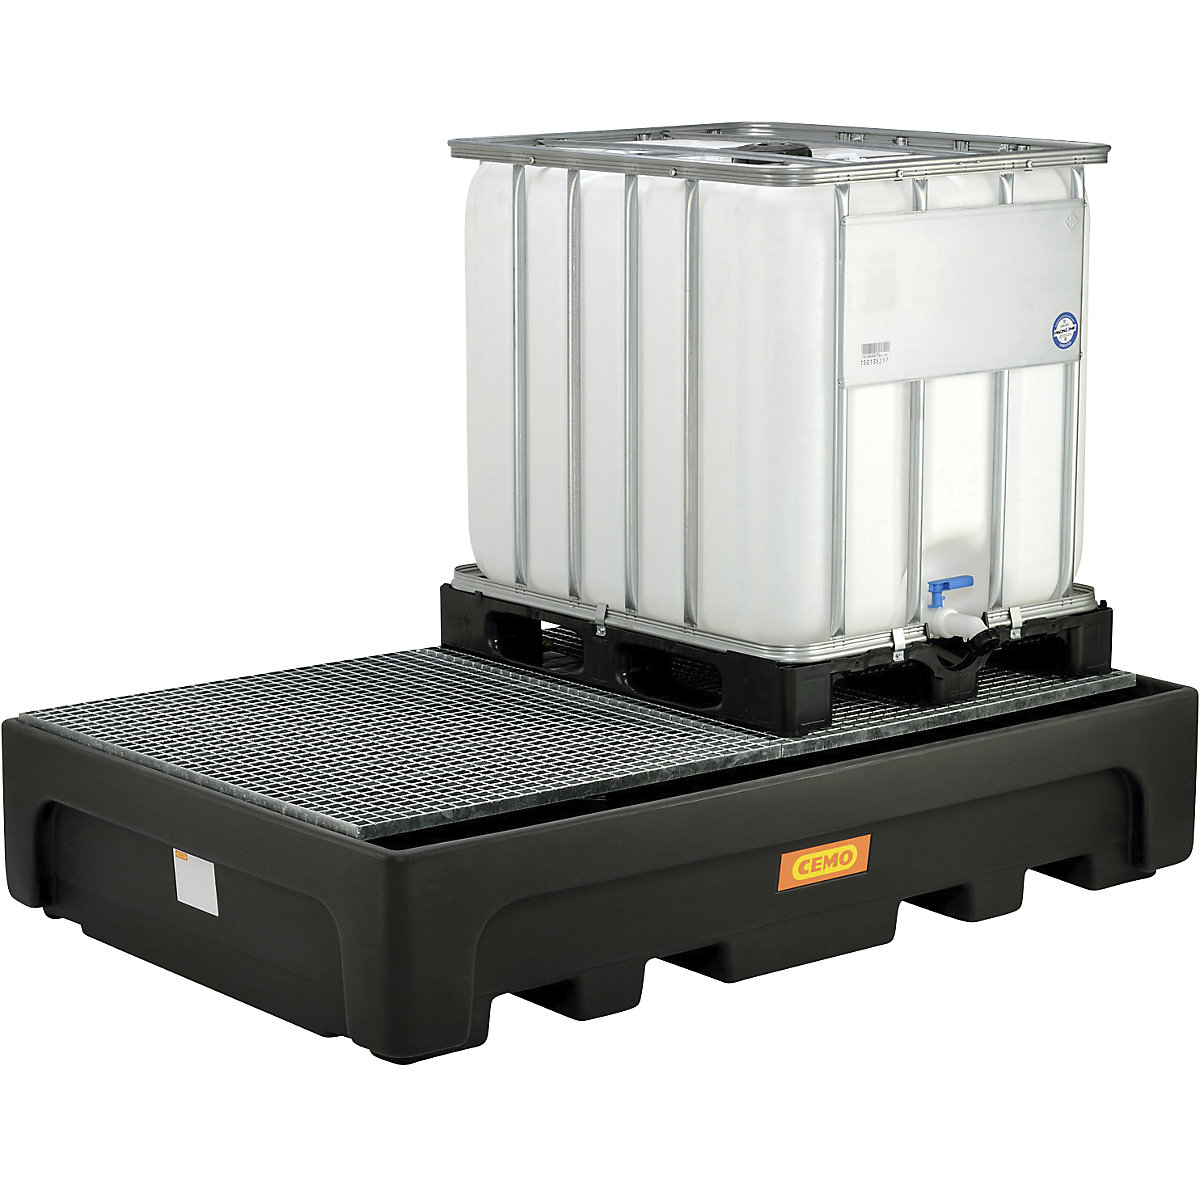 Cubeta colectora de PE para contenedores depósito IBC/KTC – CEMO (Imagen del producto 6)-5